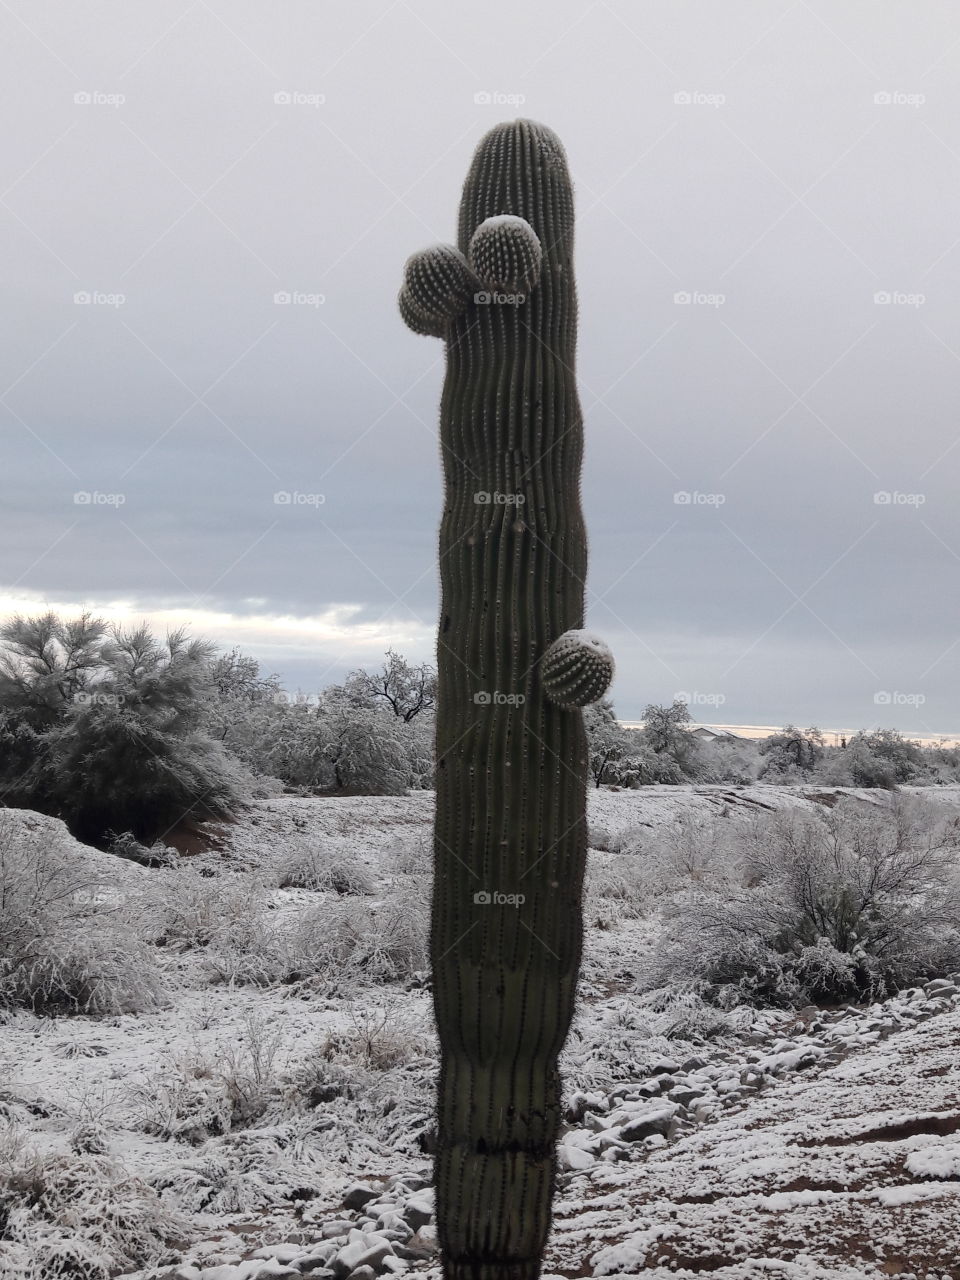 Snowy cactus